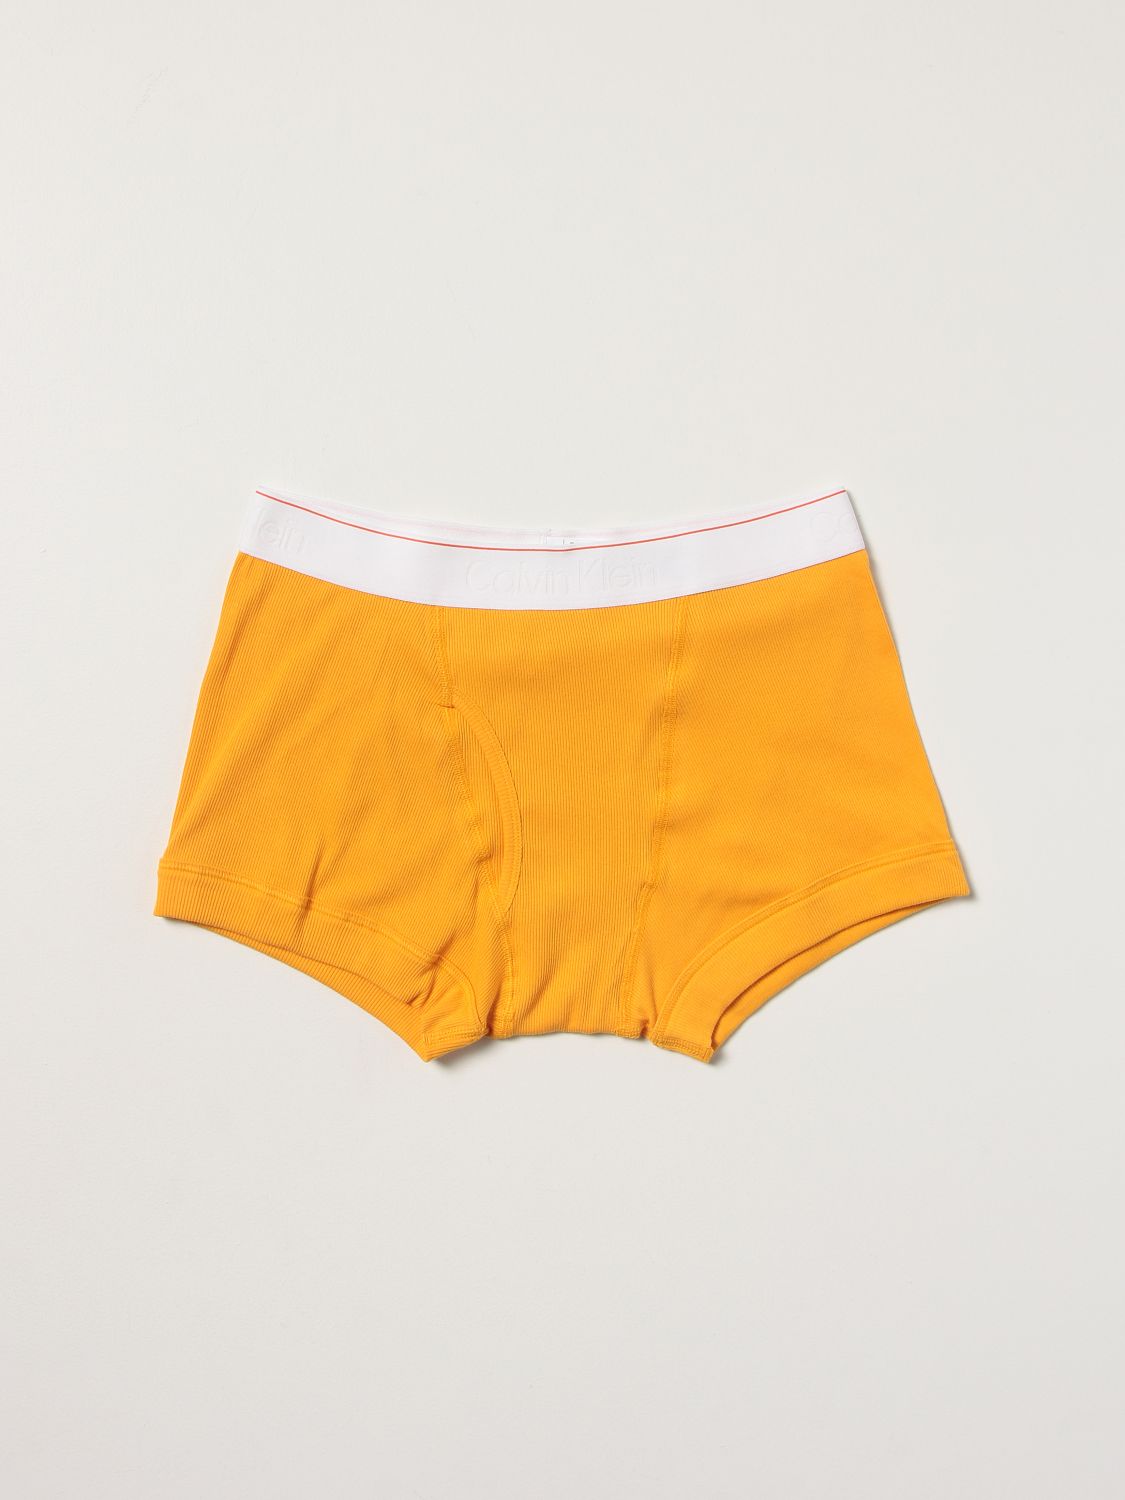 Underwear Heron Preston For Calvin Klein: Set 3 boxers Orange 2.0 Heron Preston x Calvin Klein with logo black 2